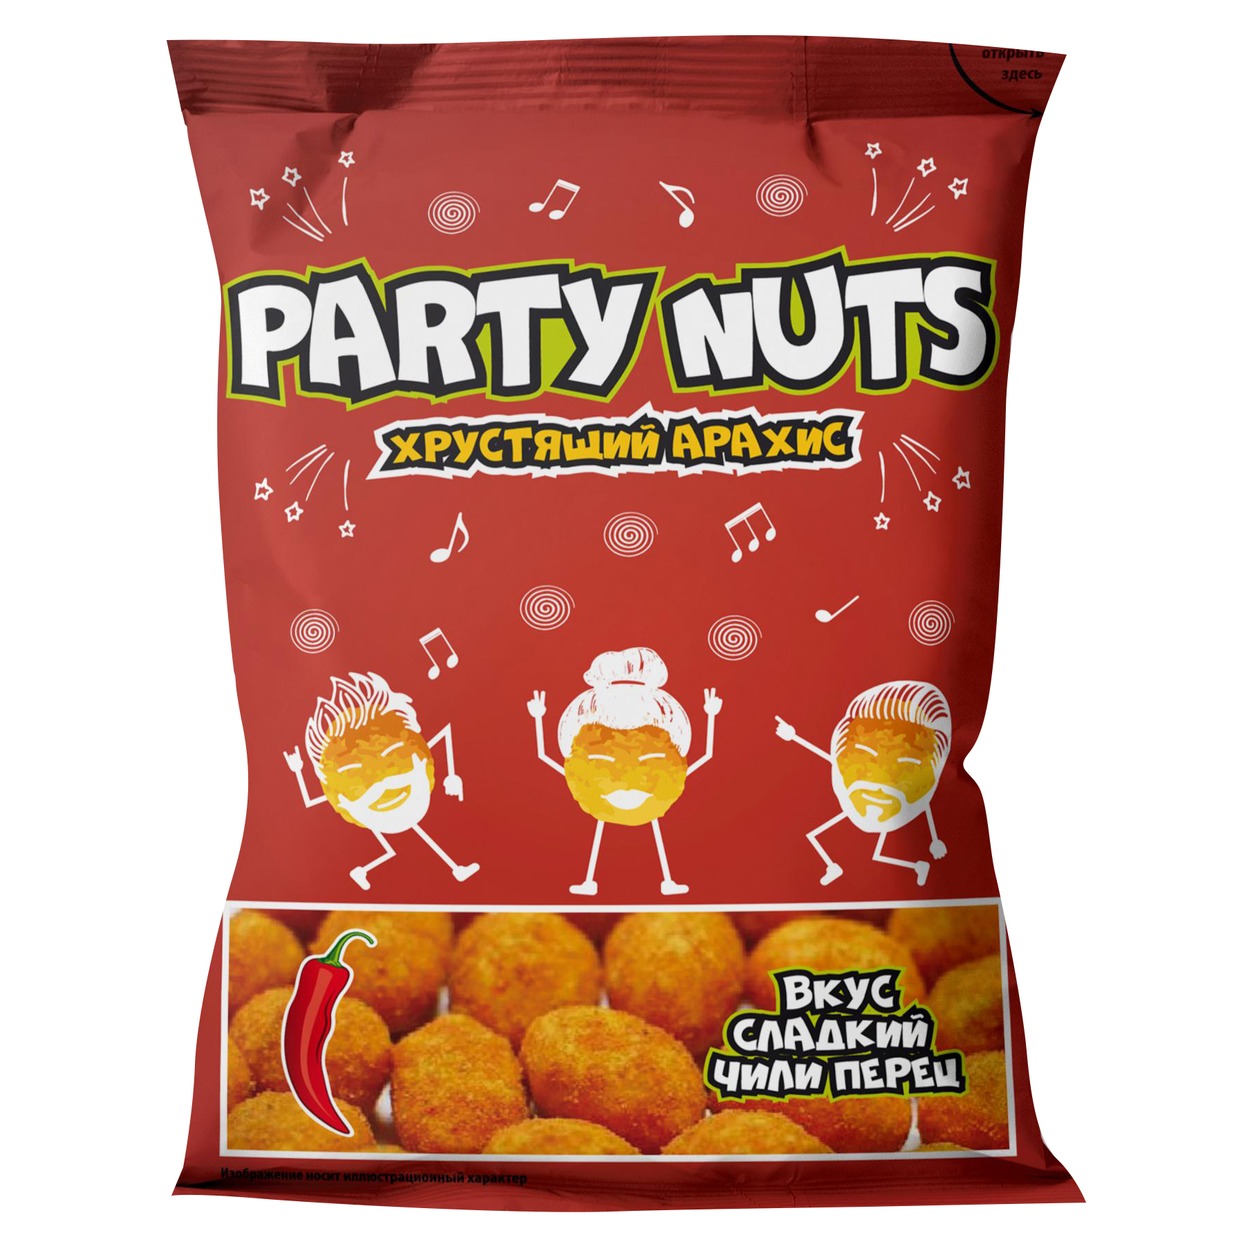 Хрустящий арахис со вкусом Сладкого Чили "PARTY NUTS", 100 г